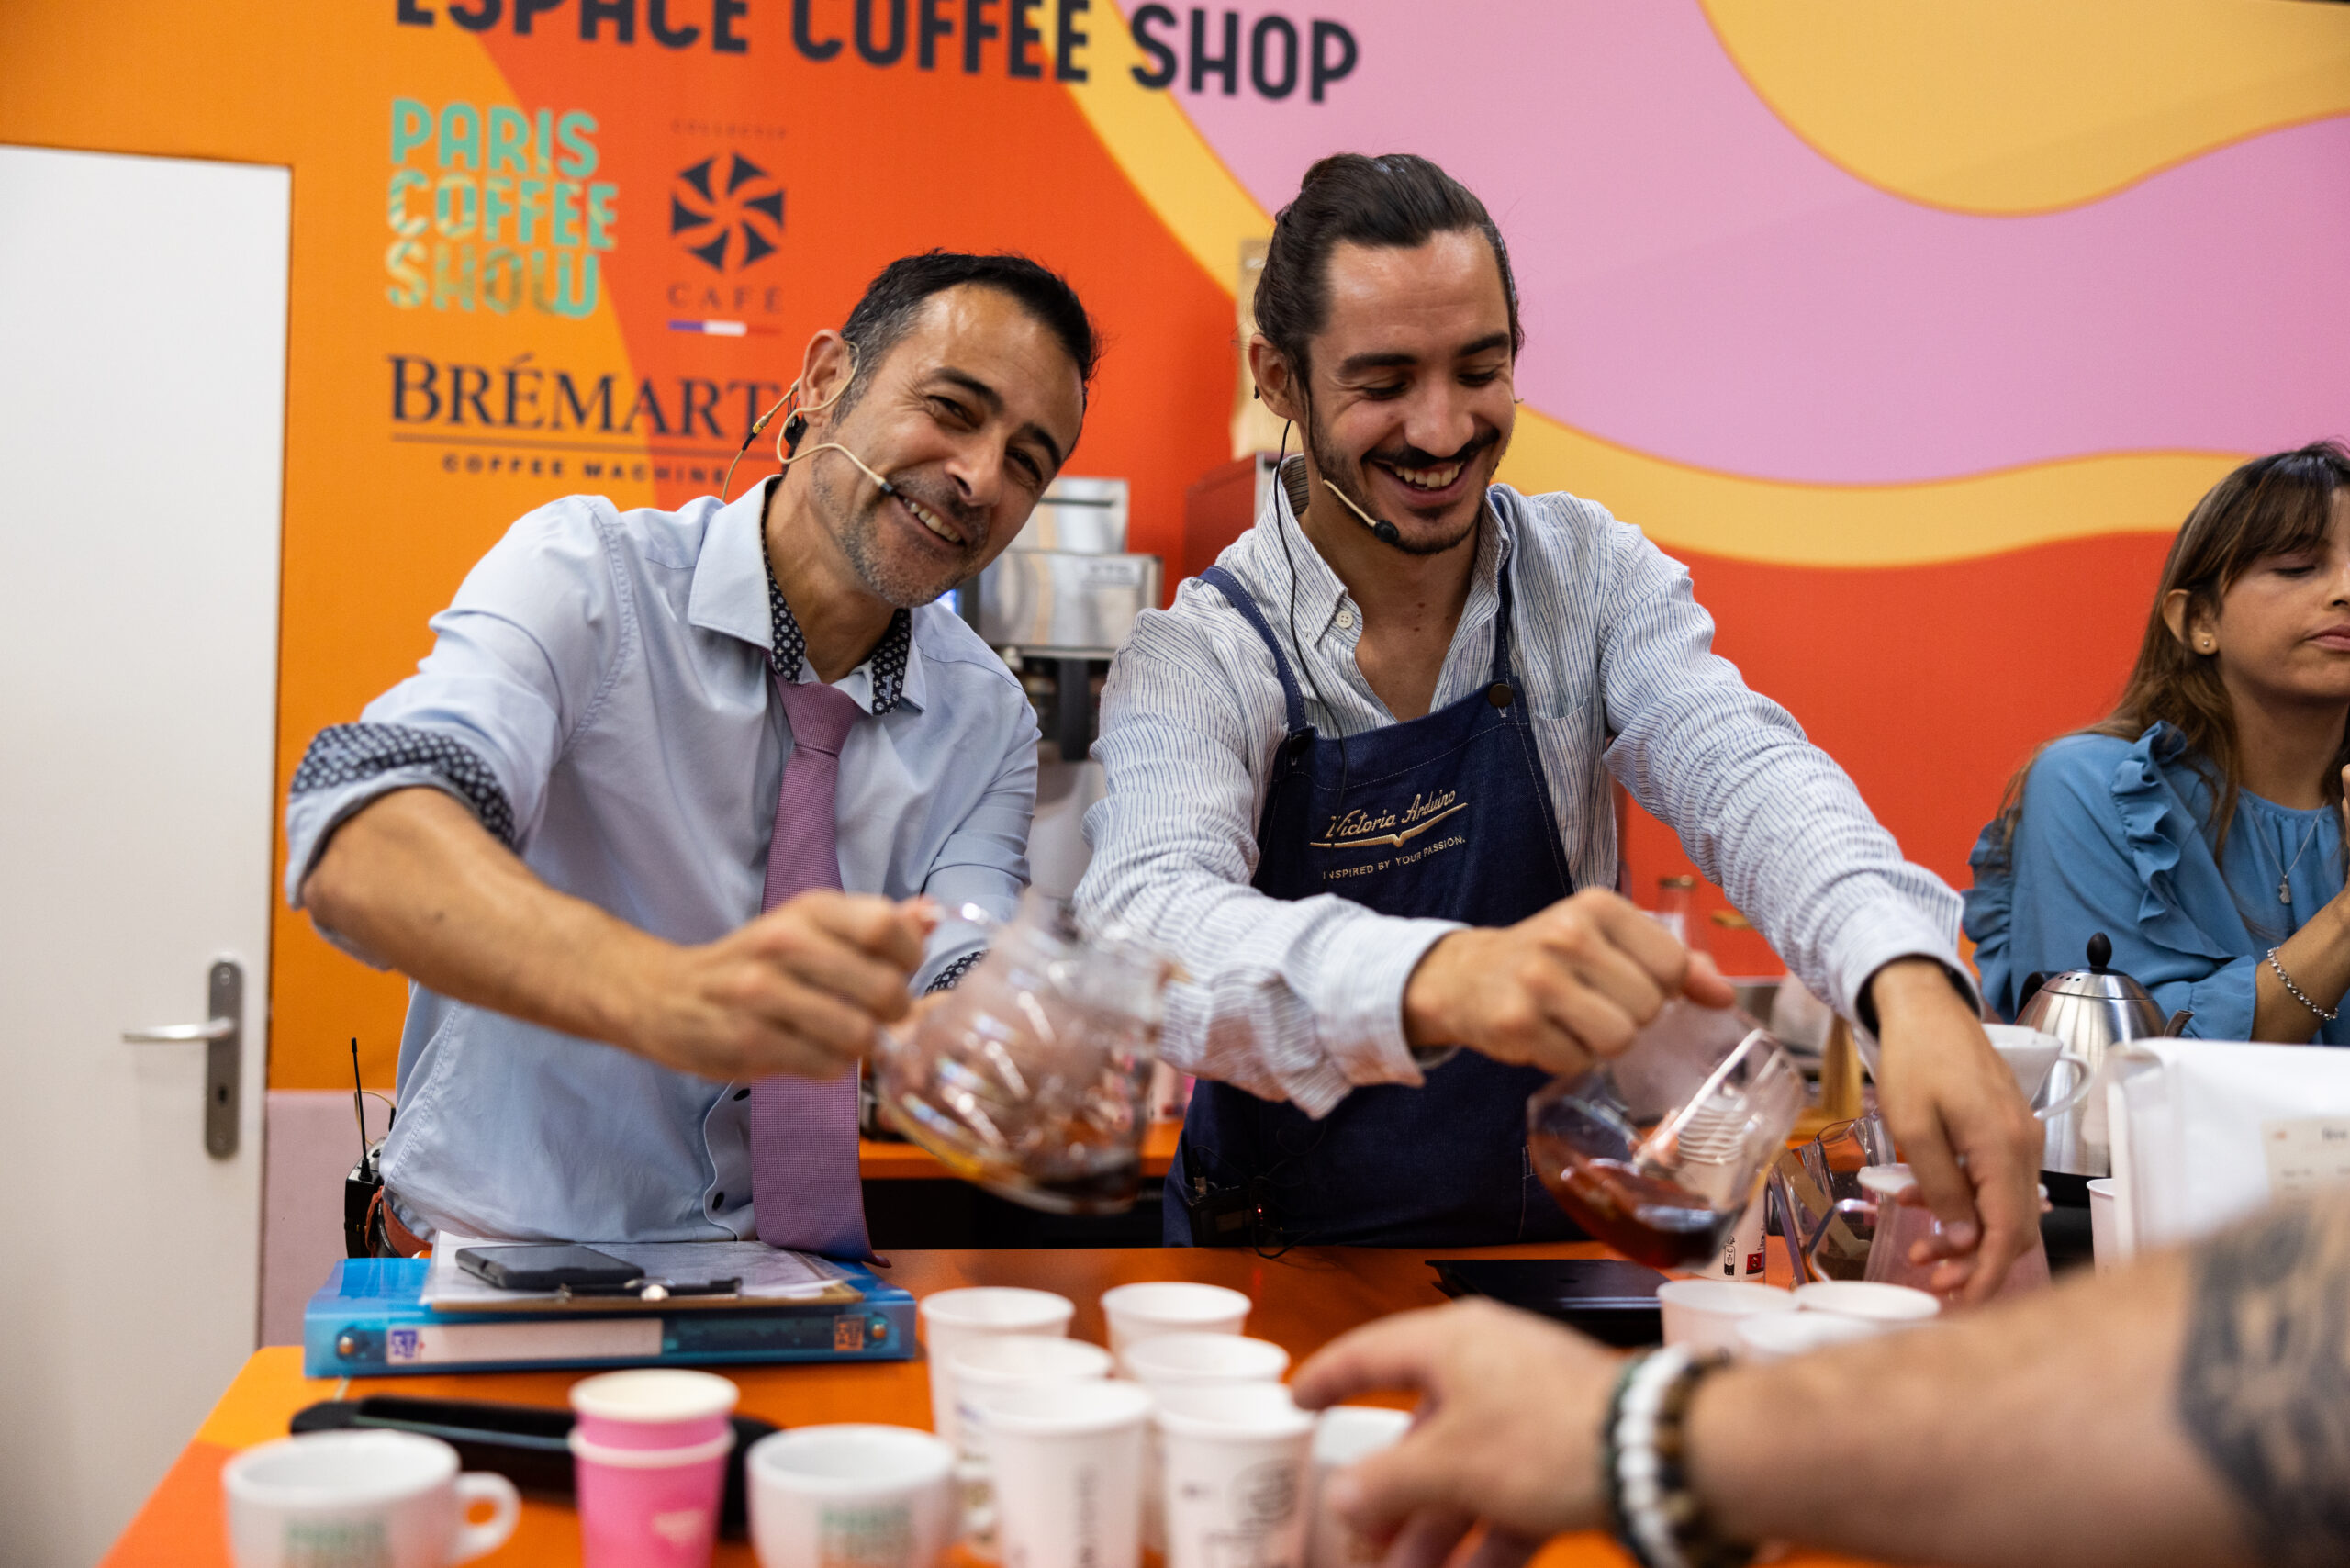 pulyCAFF sponsor delle competizioni al Paris Coffee Show